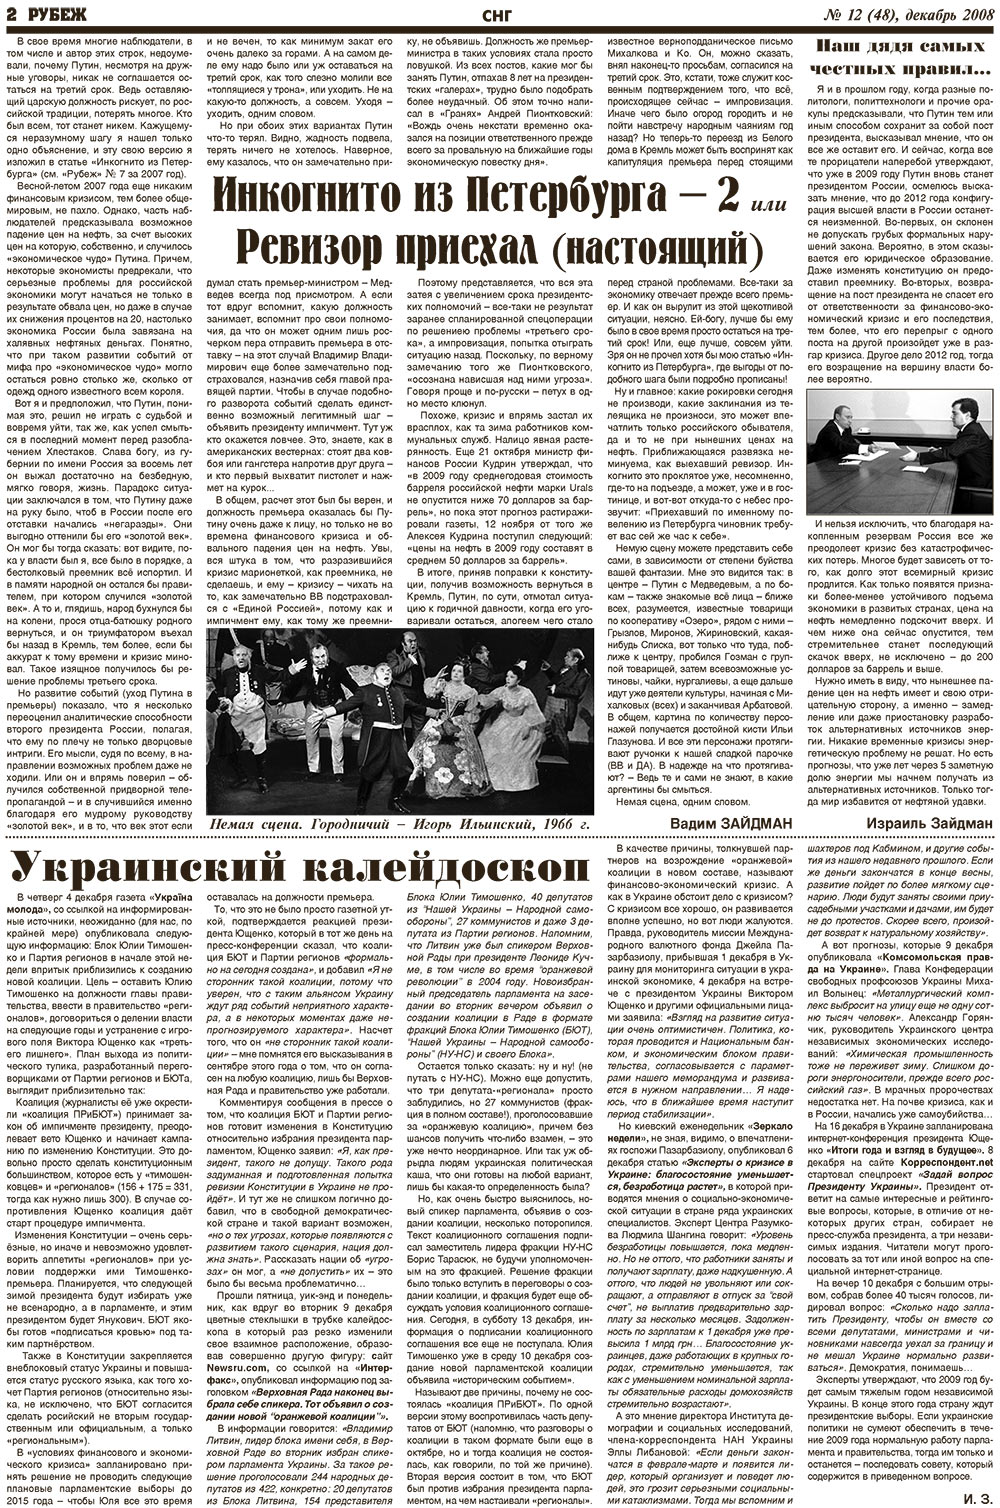 Рубеж (газета). 2008 год, номер 12, стр. 2